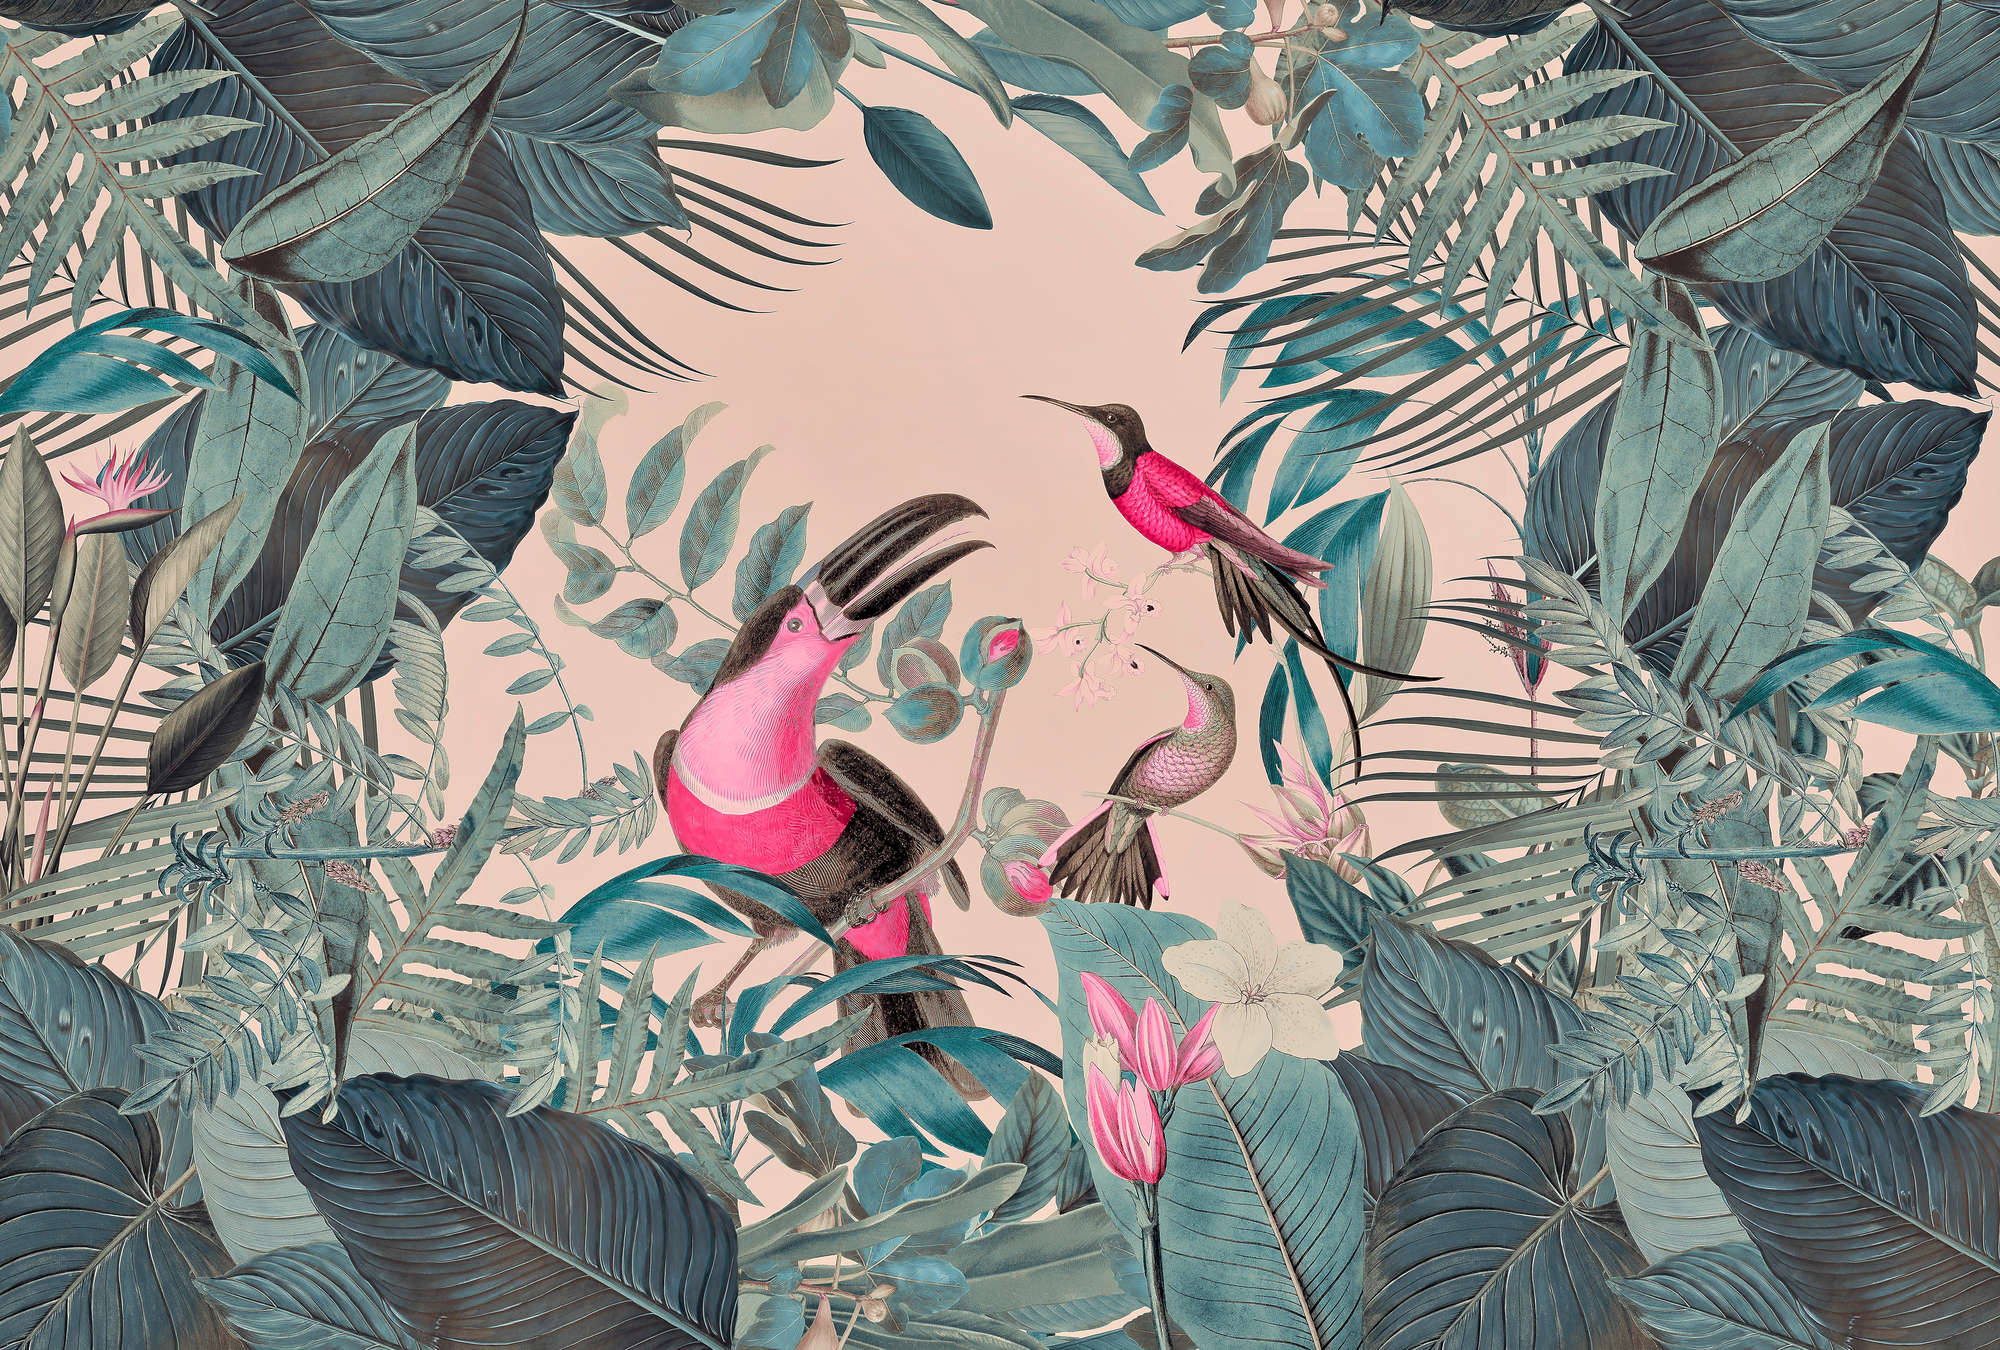             Papier peint jungle tropicale avec des oiseaux - vert, rose
        